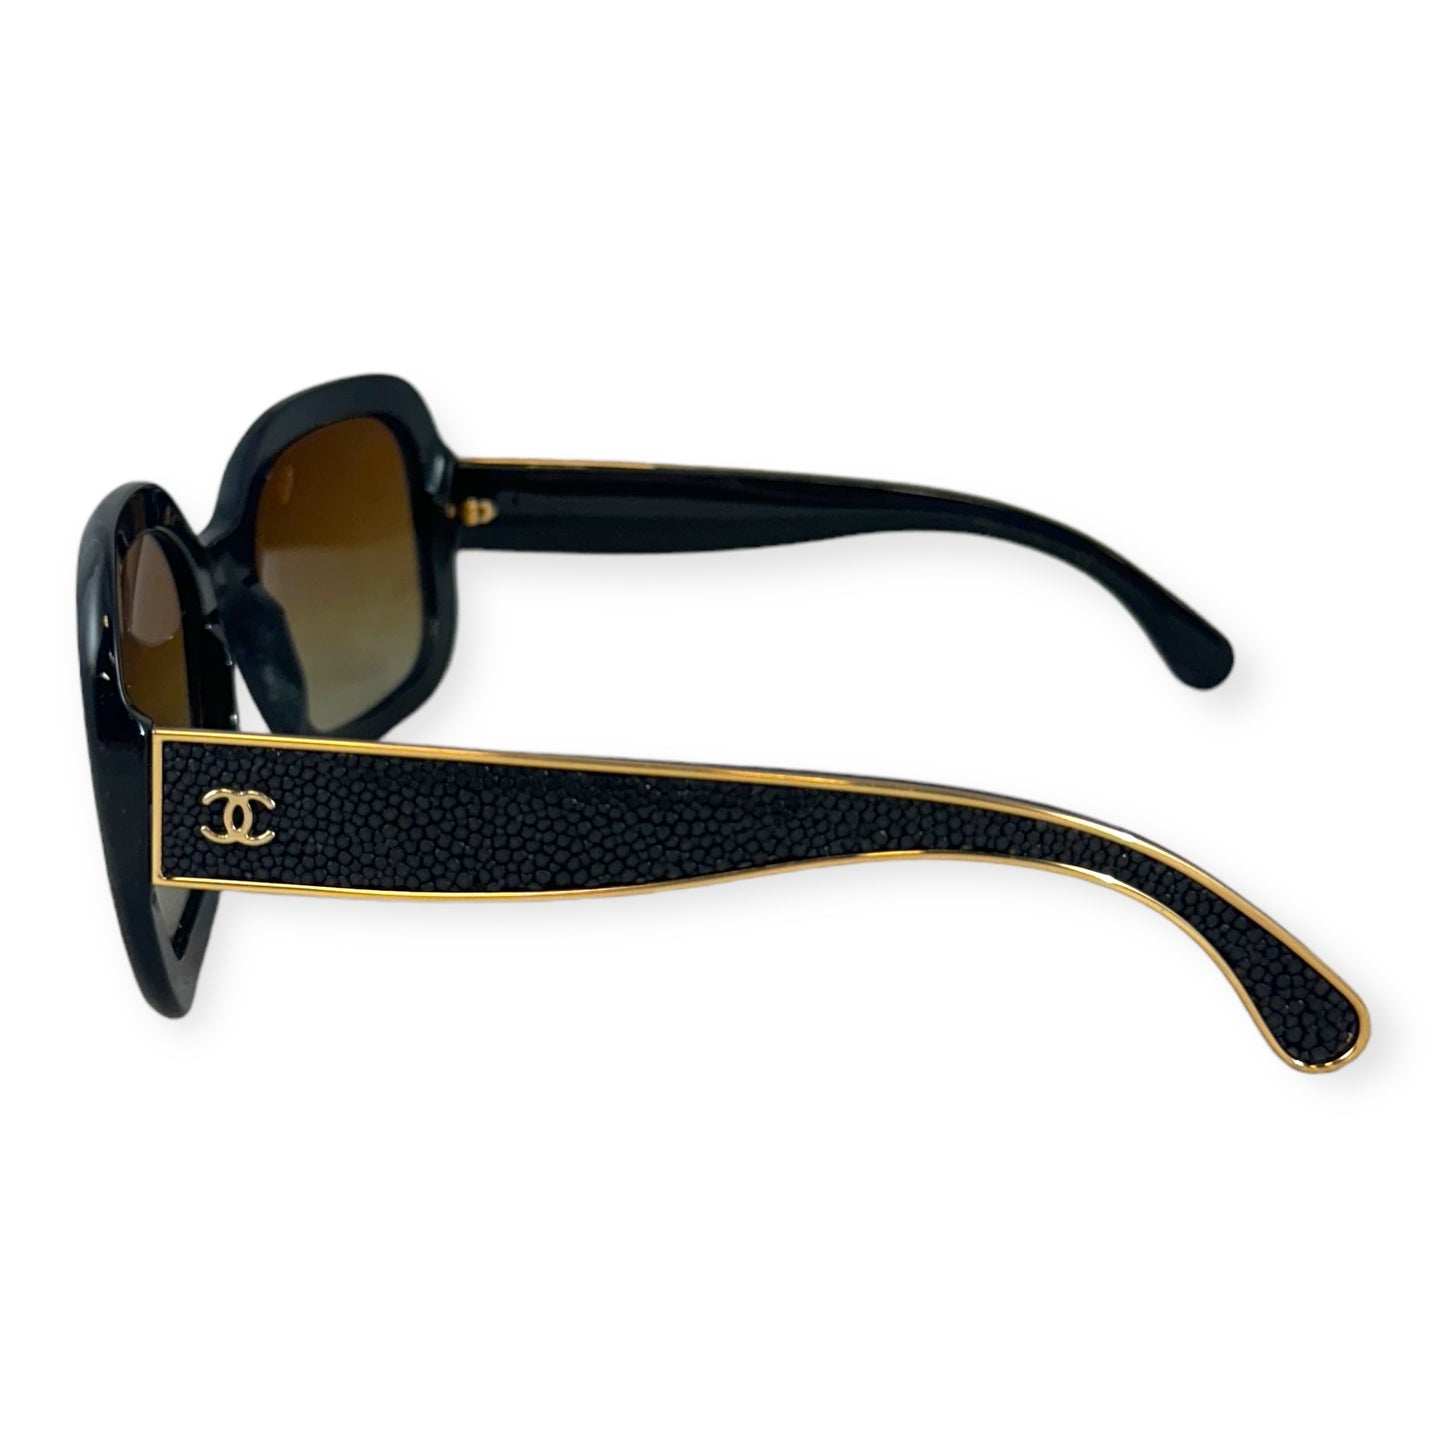 CHANEL Stingray Sunglasses in Black